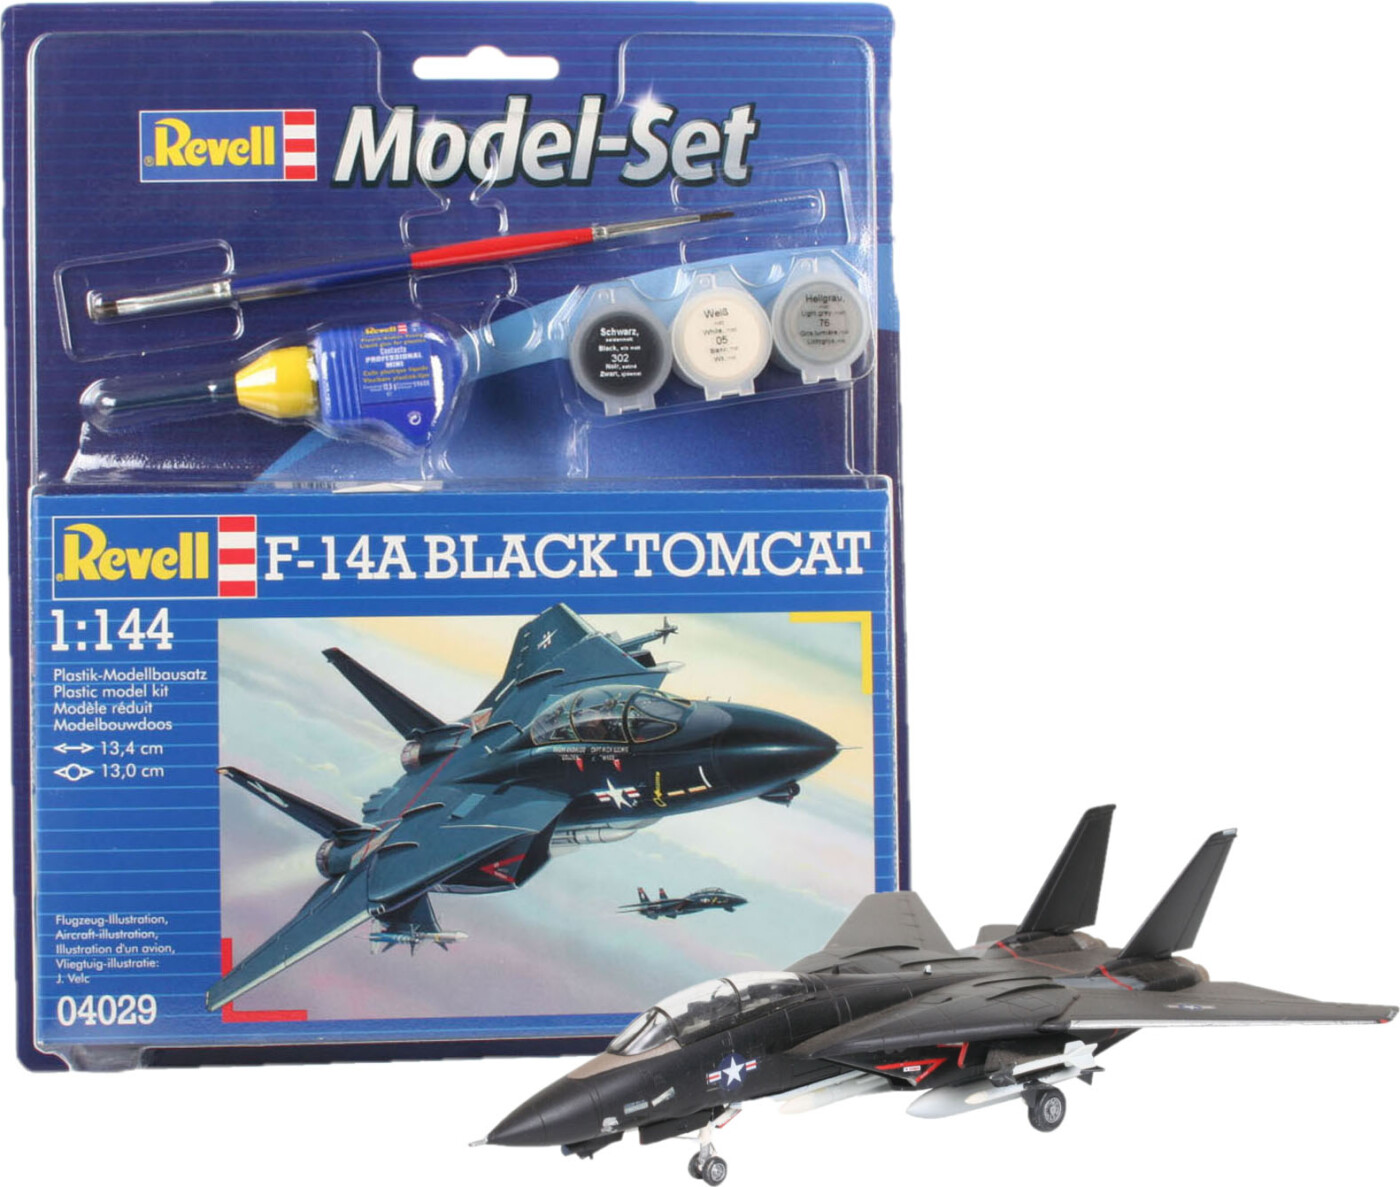 Billede af Revell - F-14a Black Tomcat Modelfly - 1:144 - 64029